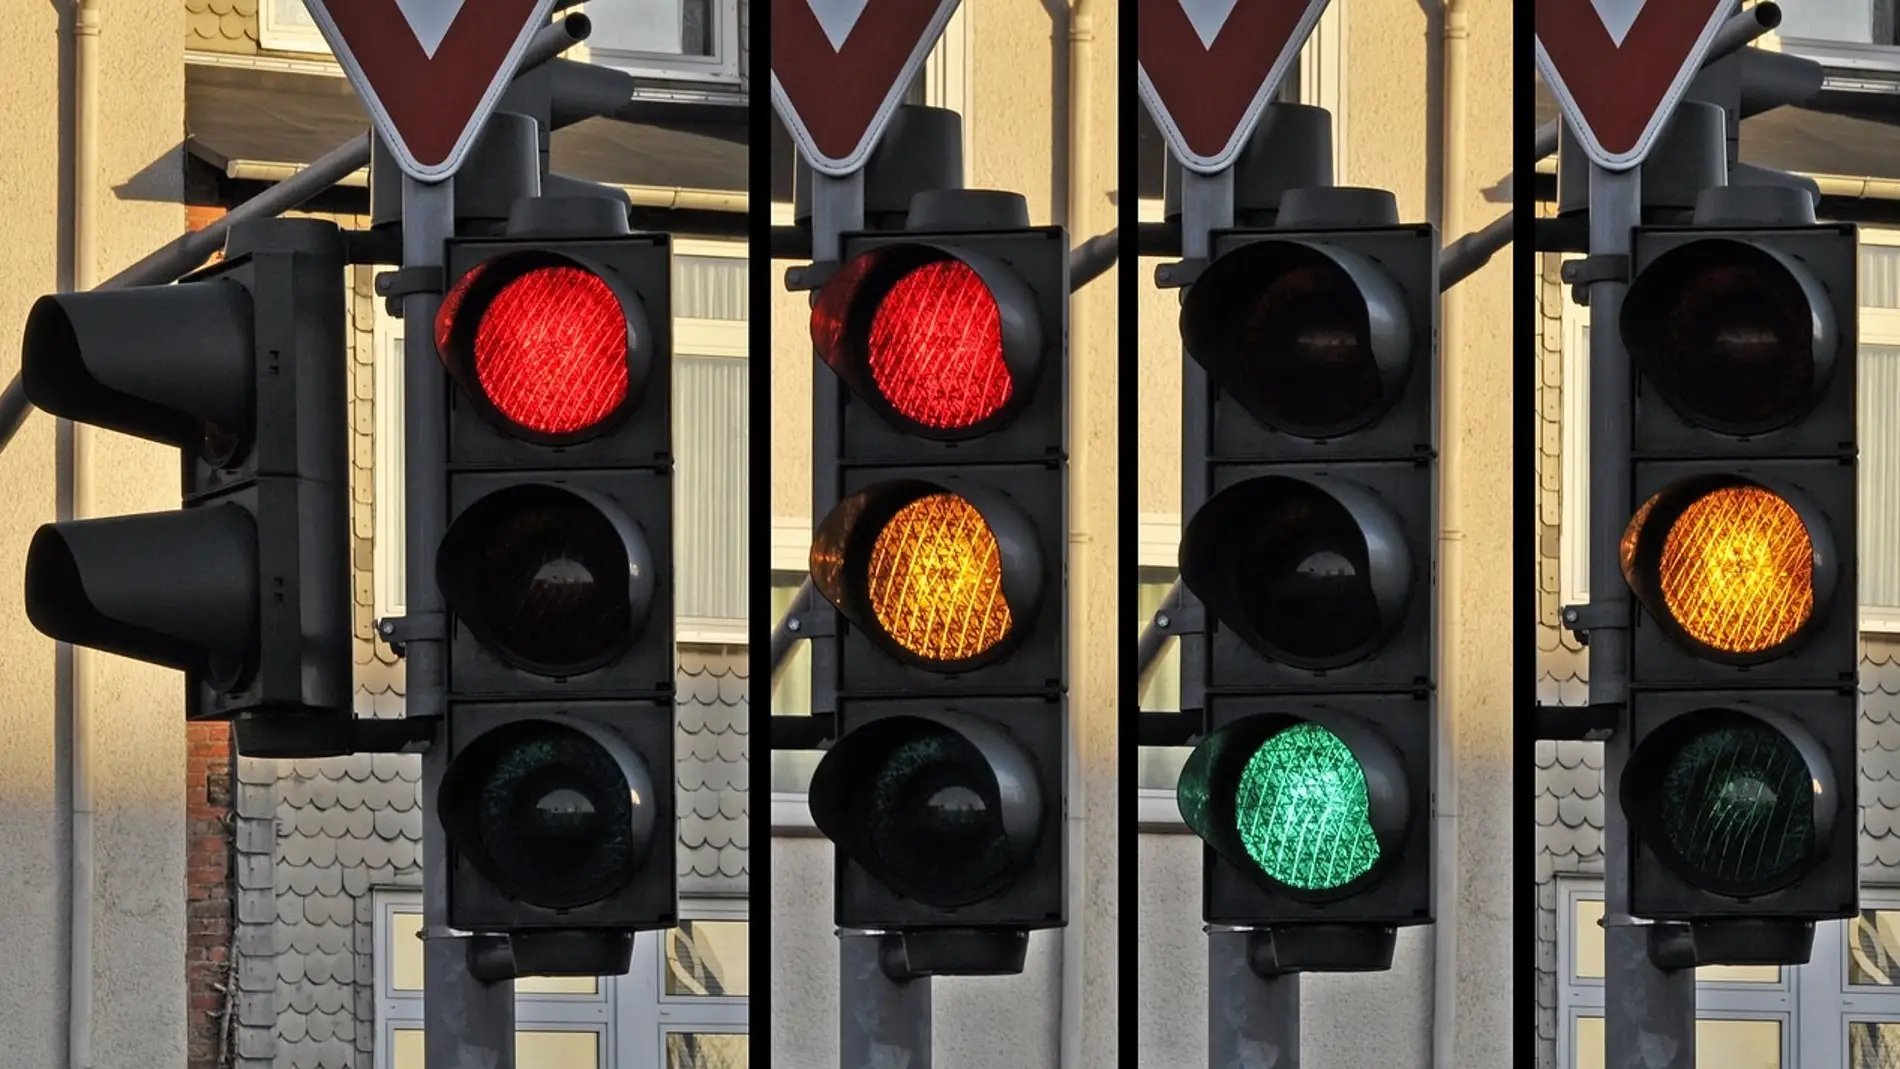 La razón por la que los semáforos podrían desaparecer tal y como los conocemos